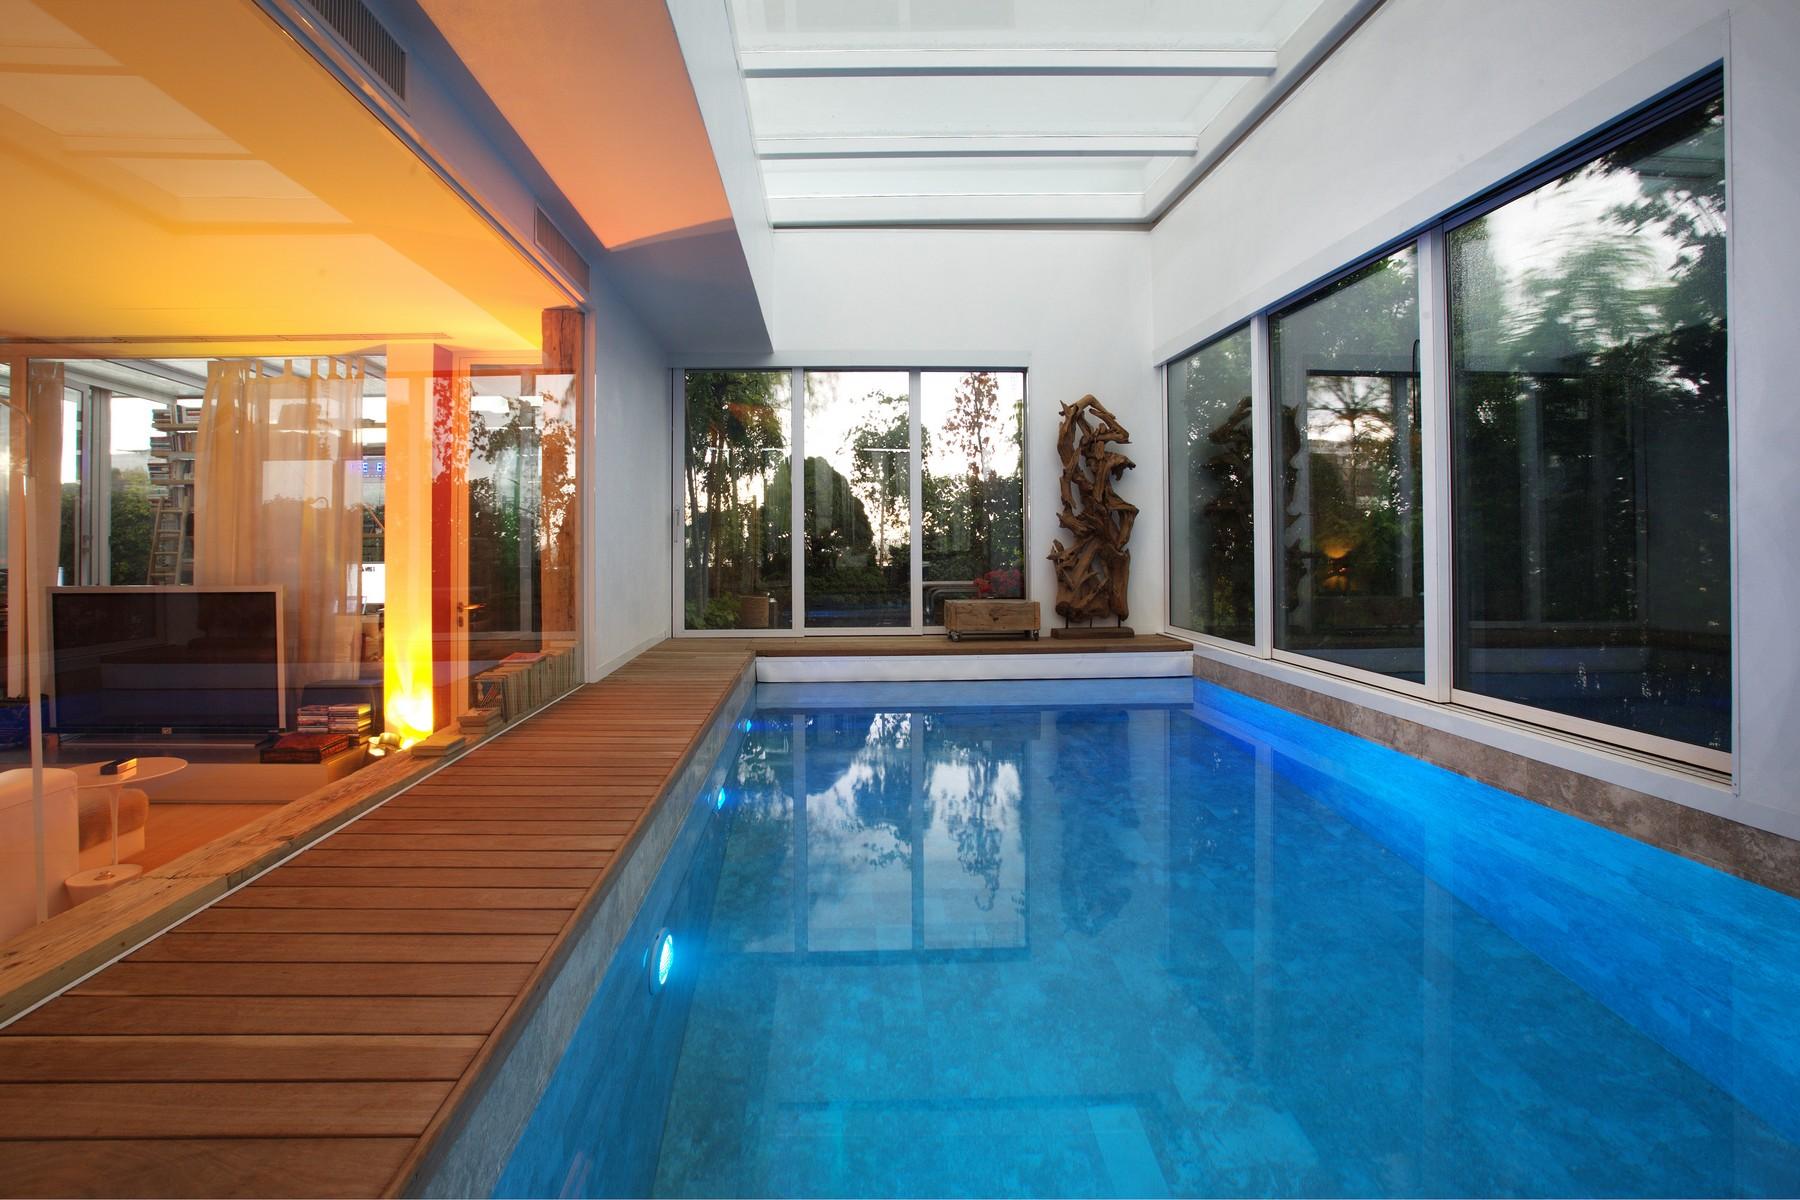 Incantevole loft di 350 mq con piscina privata e giardino pensile - 12